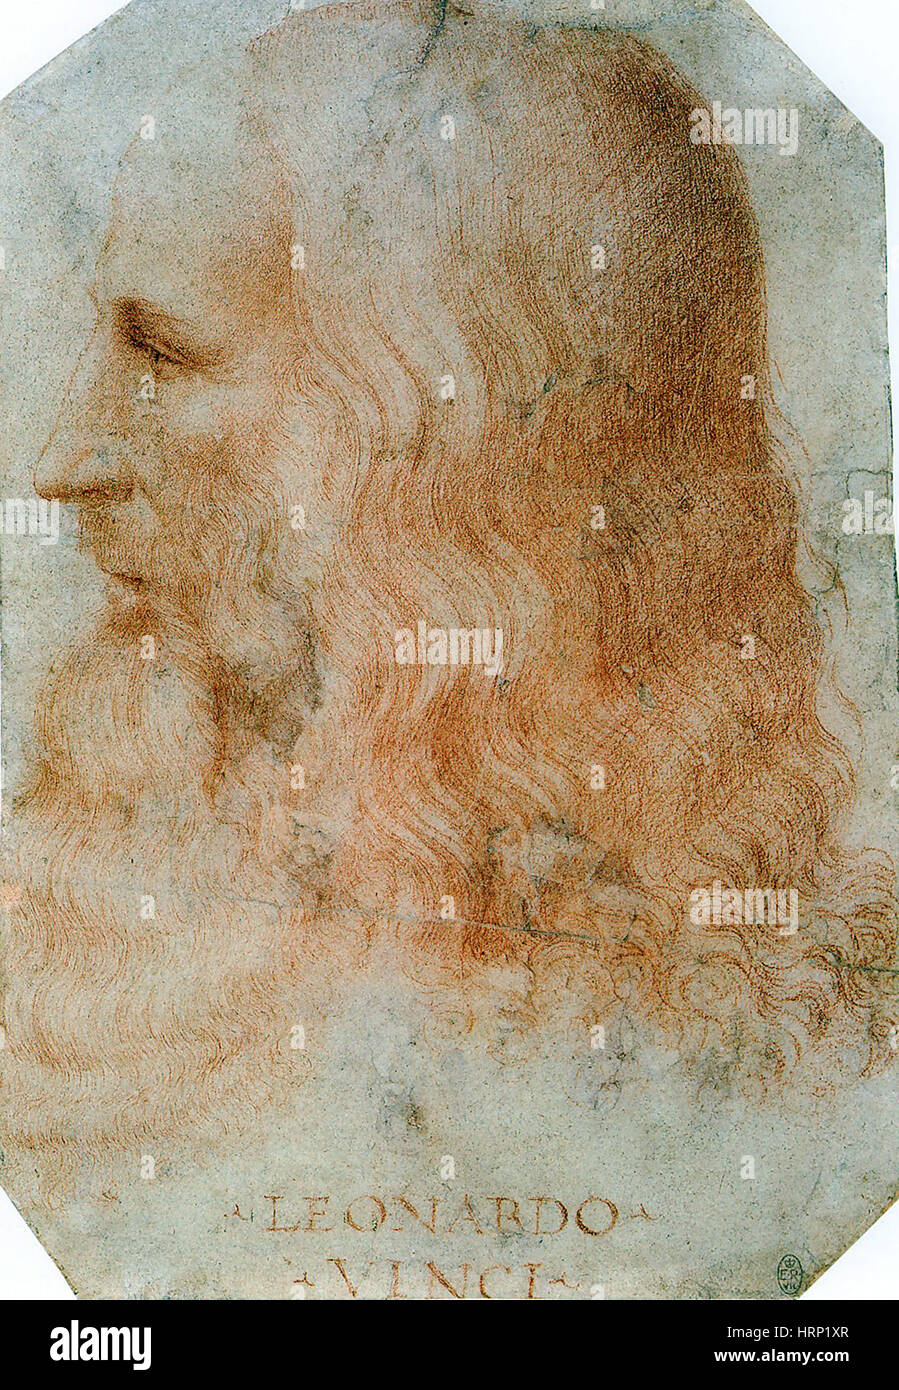 Leonardo da Vinci, italienisches Universalgenie der Renaissance Stockfoto